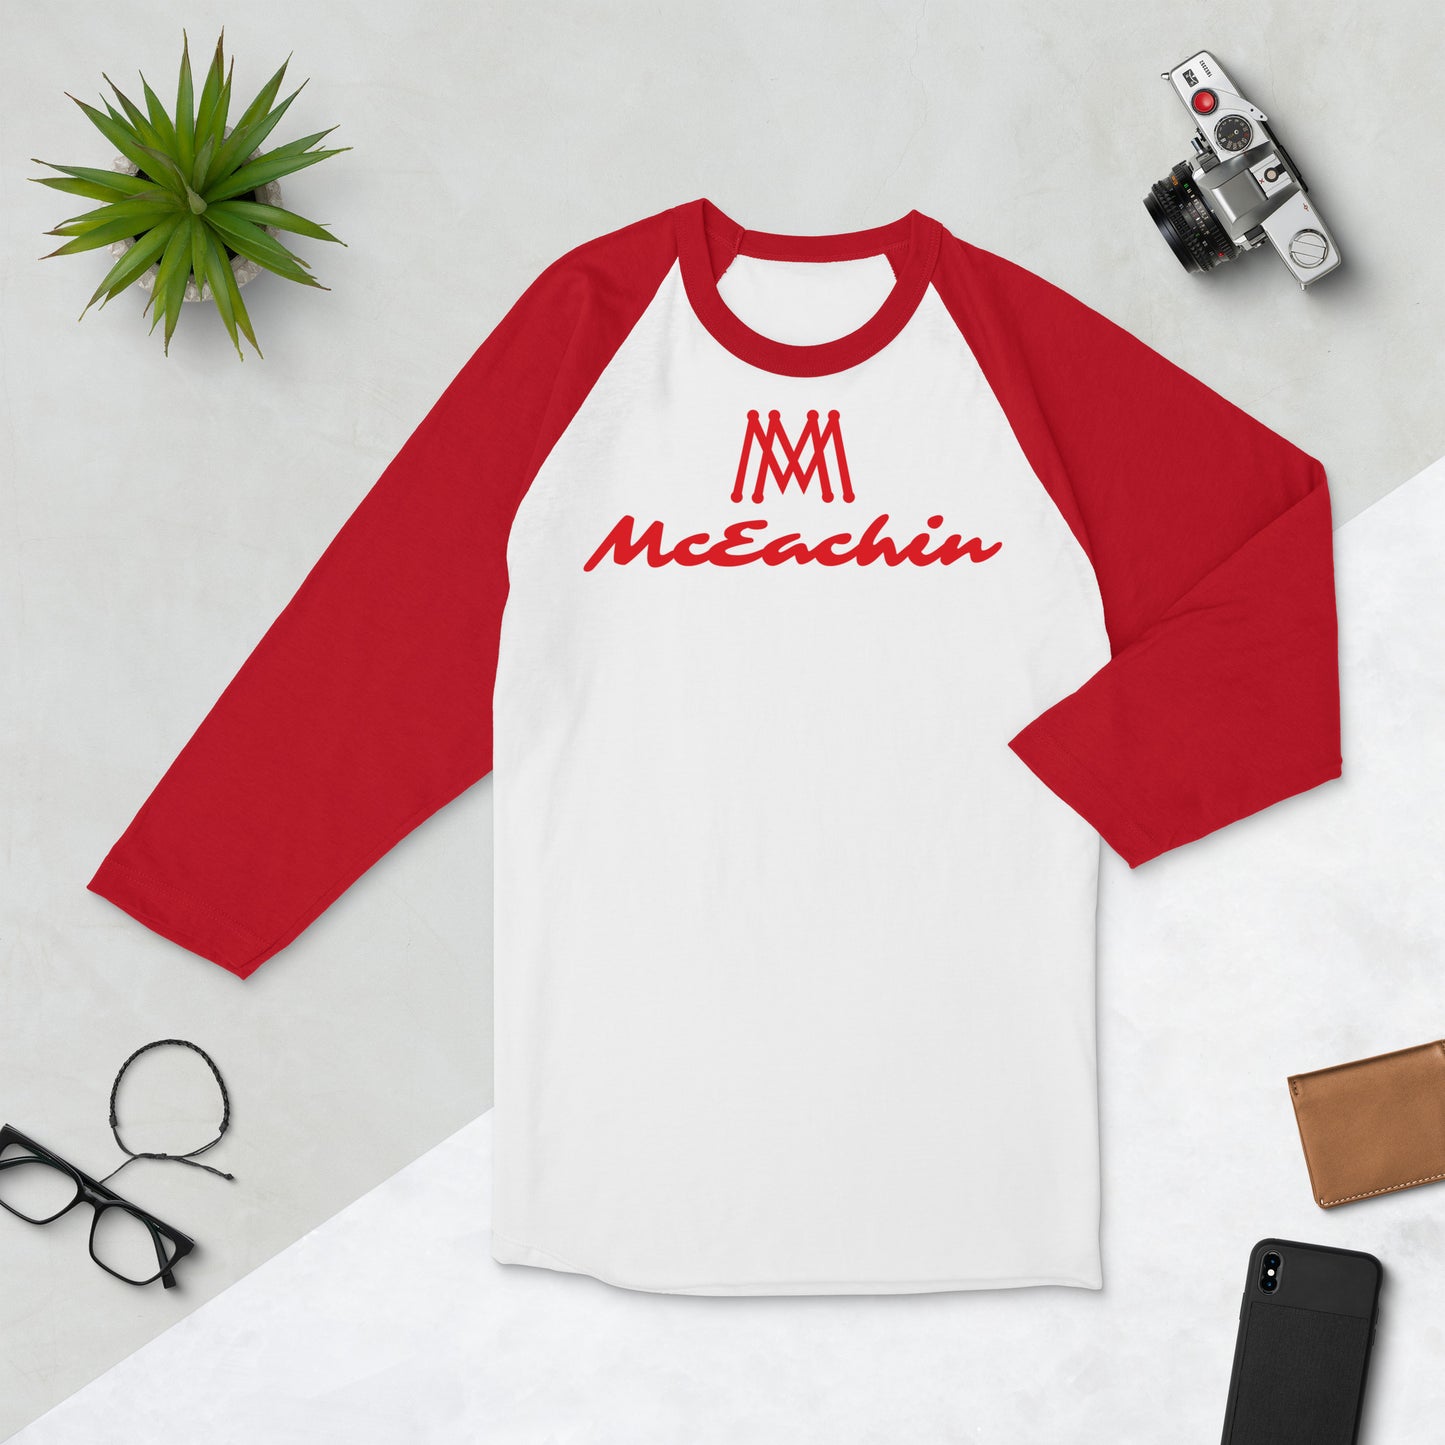 McEachin 3/4 Sleeve Raglan Shirt Red/White